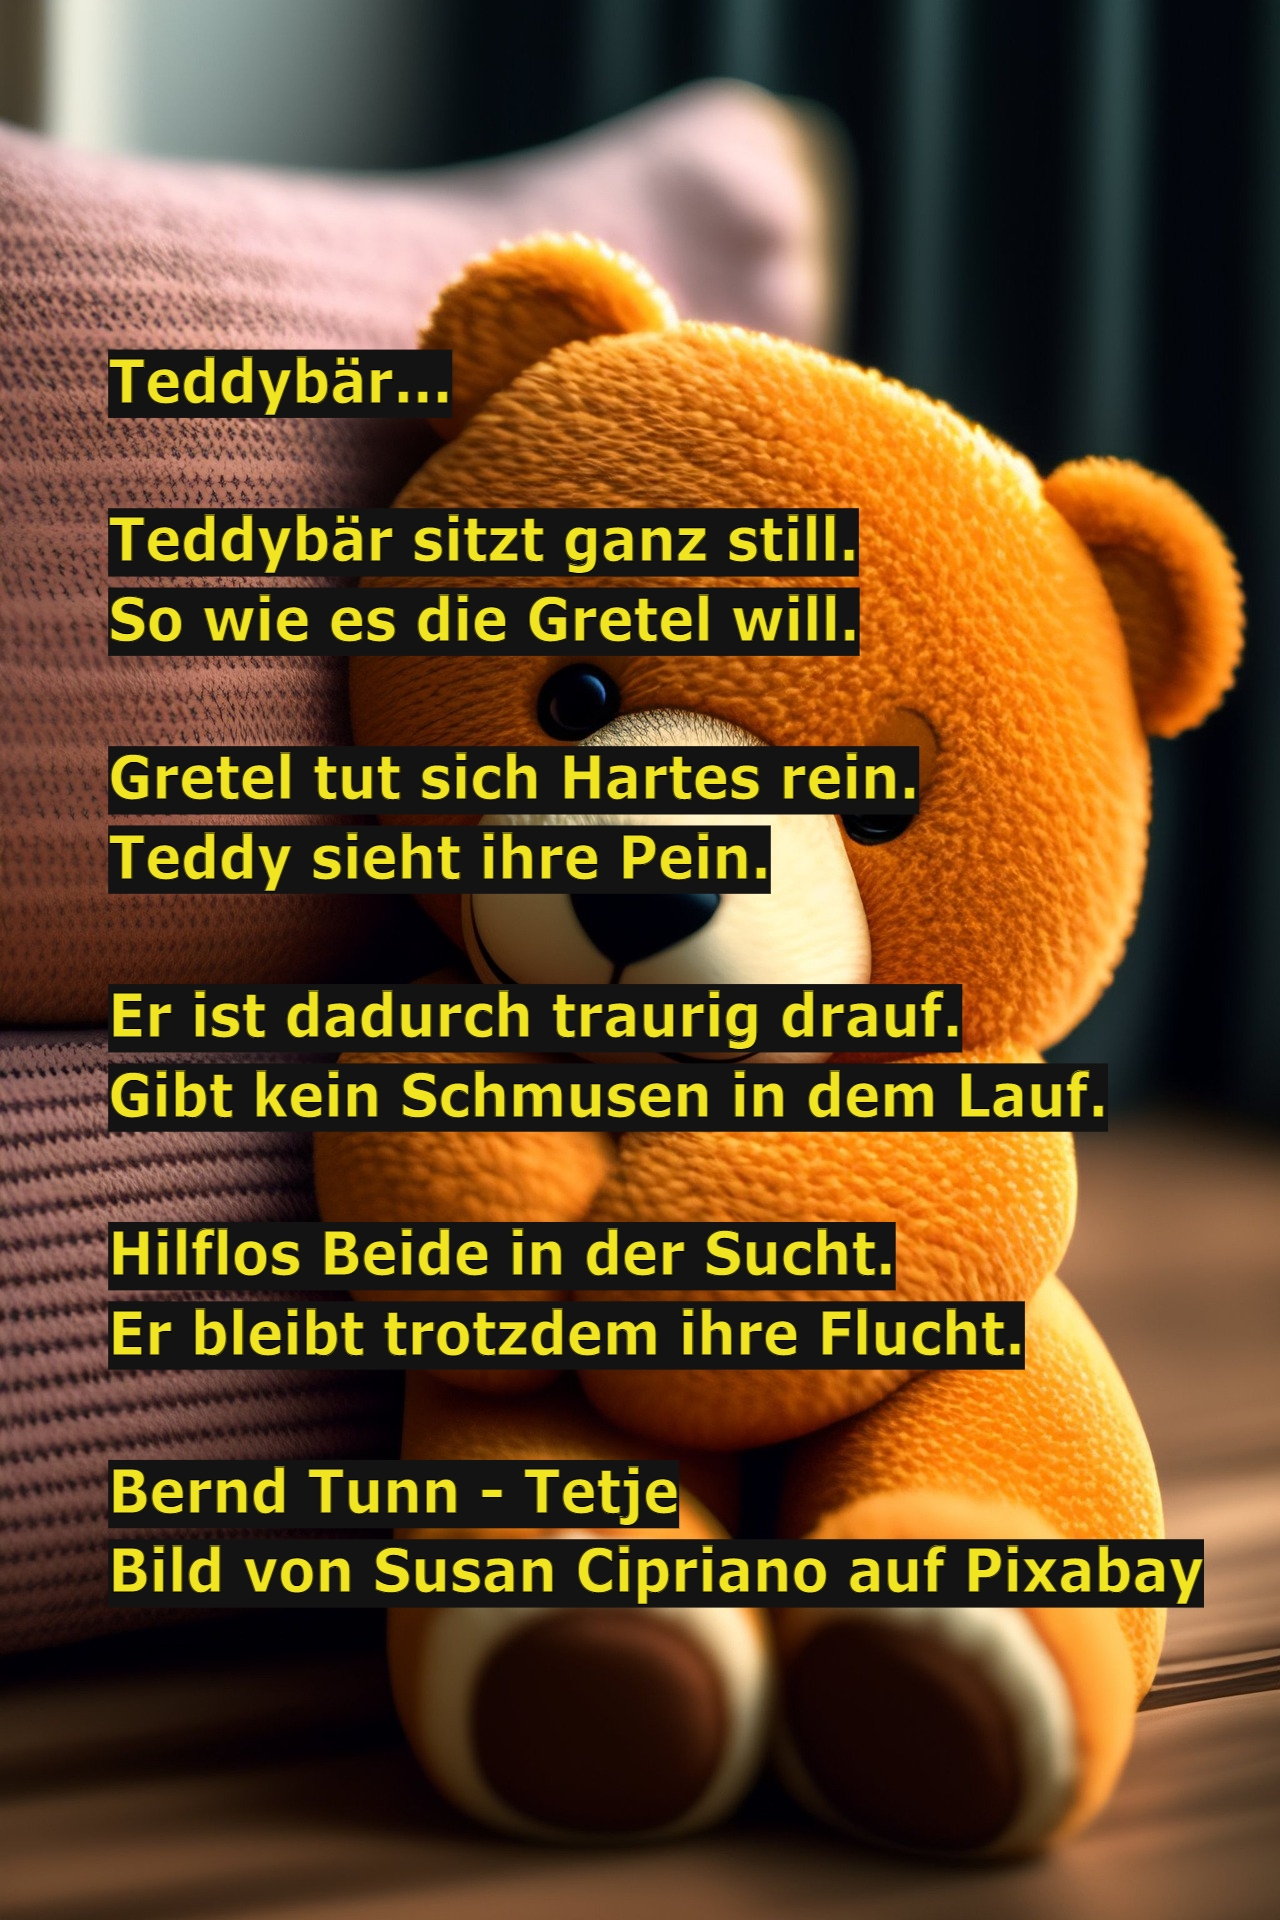 Bildgedicht: Teddybär...